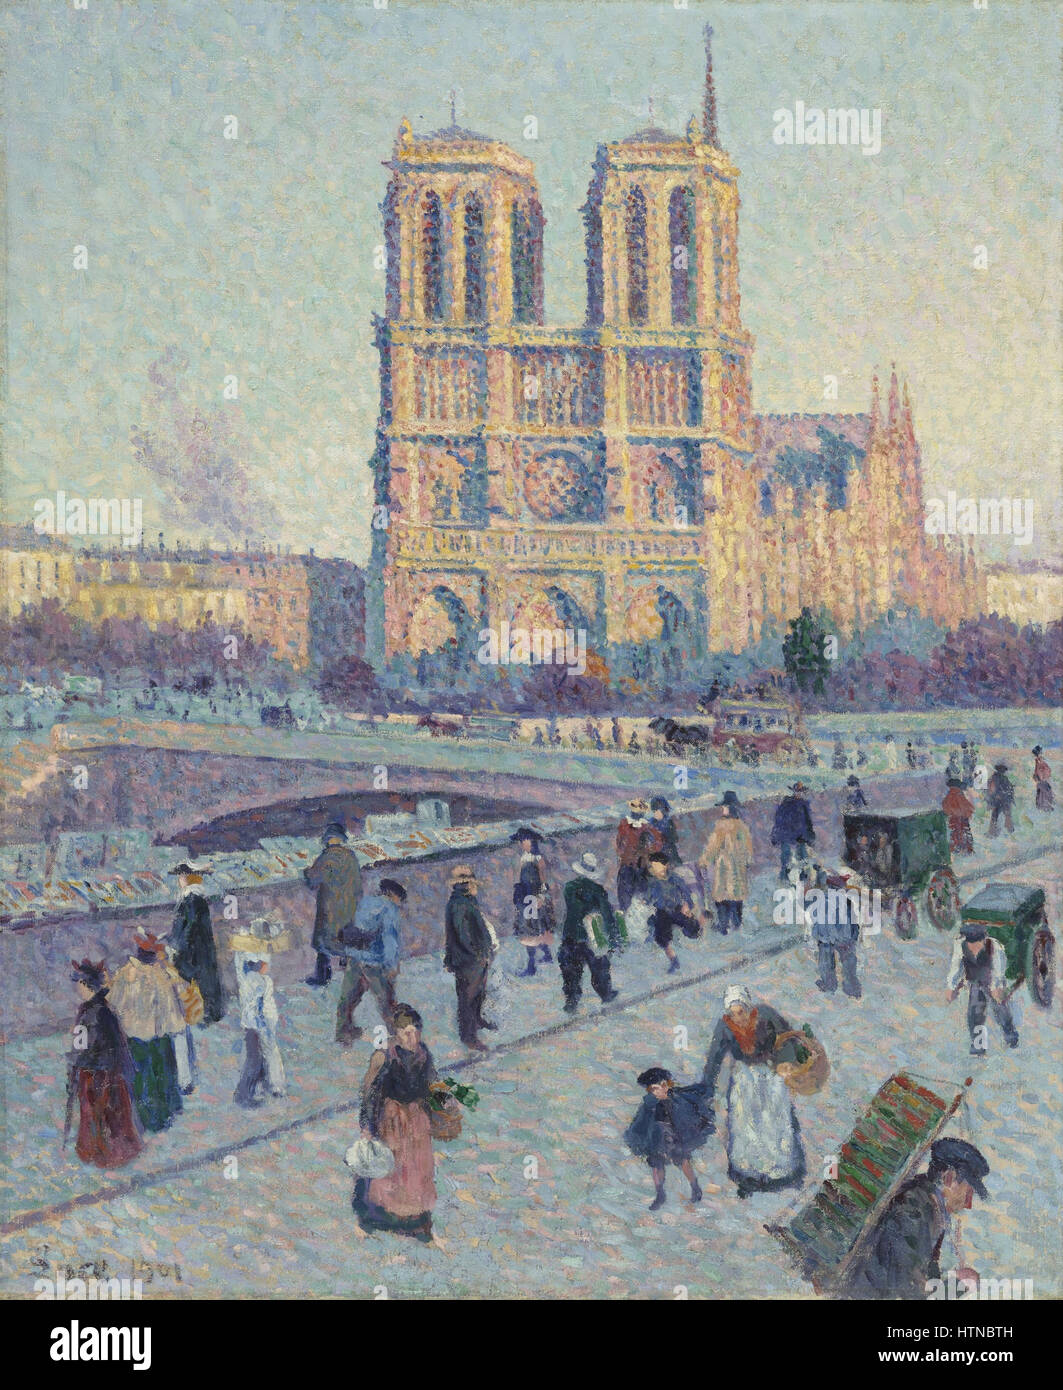 Maximilien Luce - The Quai Saint-Michel and Notre-Dame - Google Art Project Stock Photo